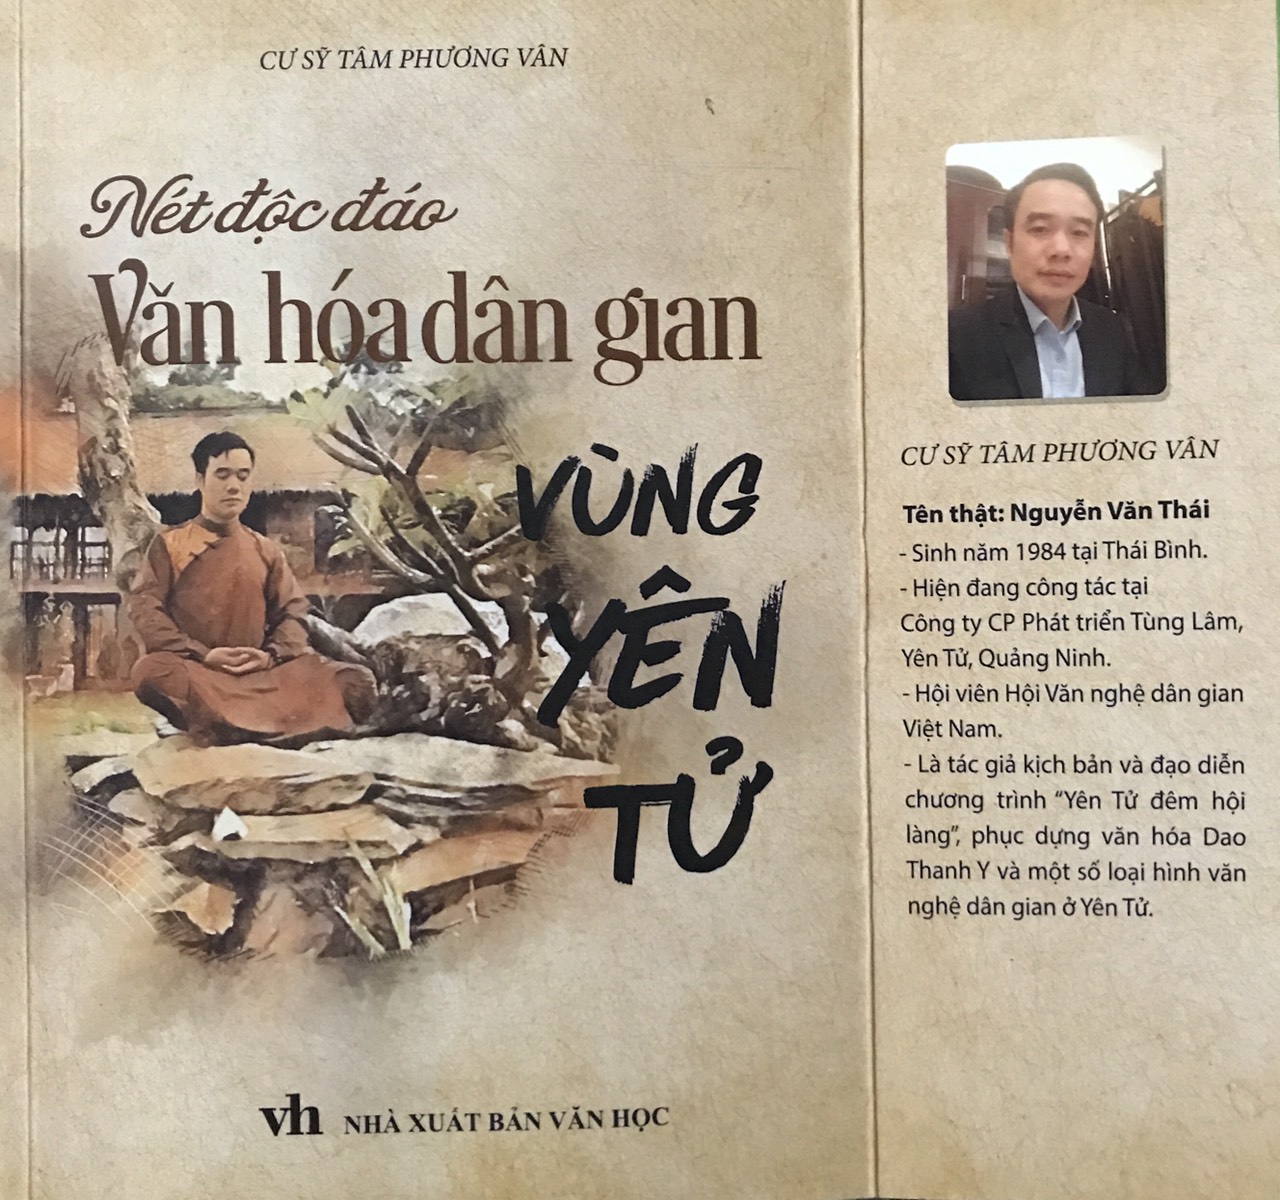 Bìa cuốn sách Nét độc đáo văn hoá dân gian vùng Yên Tử của cư sĩ Tâm Phương Văn (Nguyễn Văn Thái).